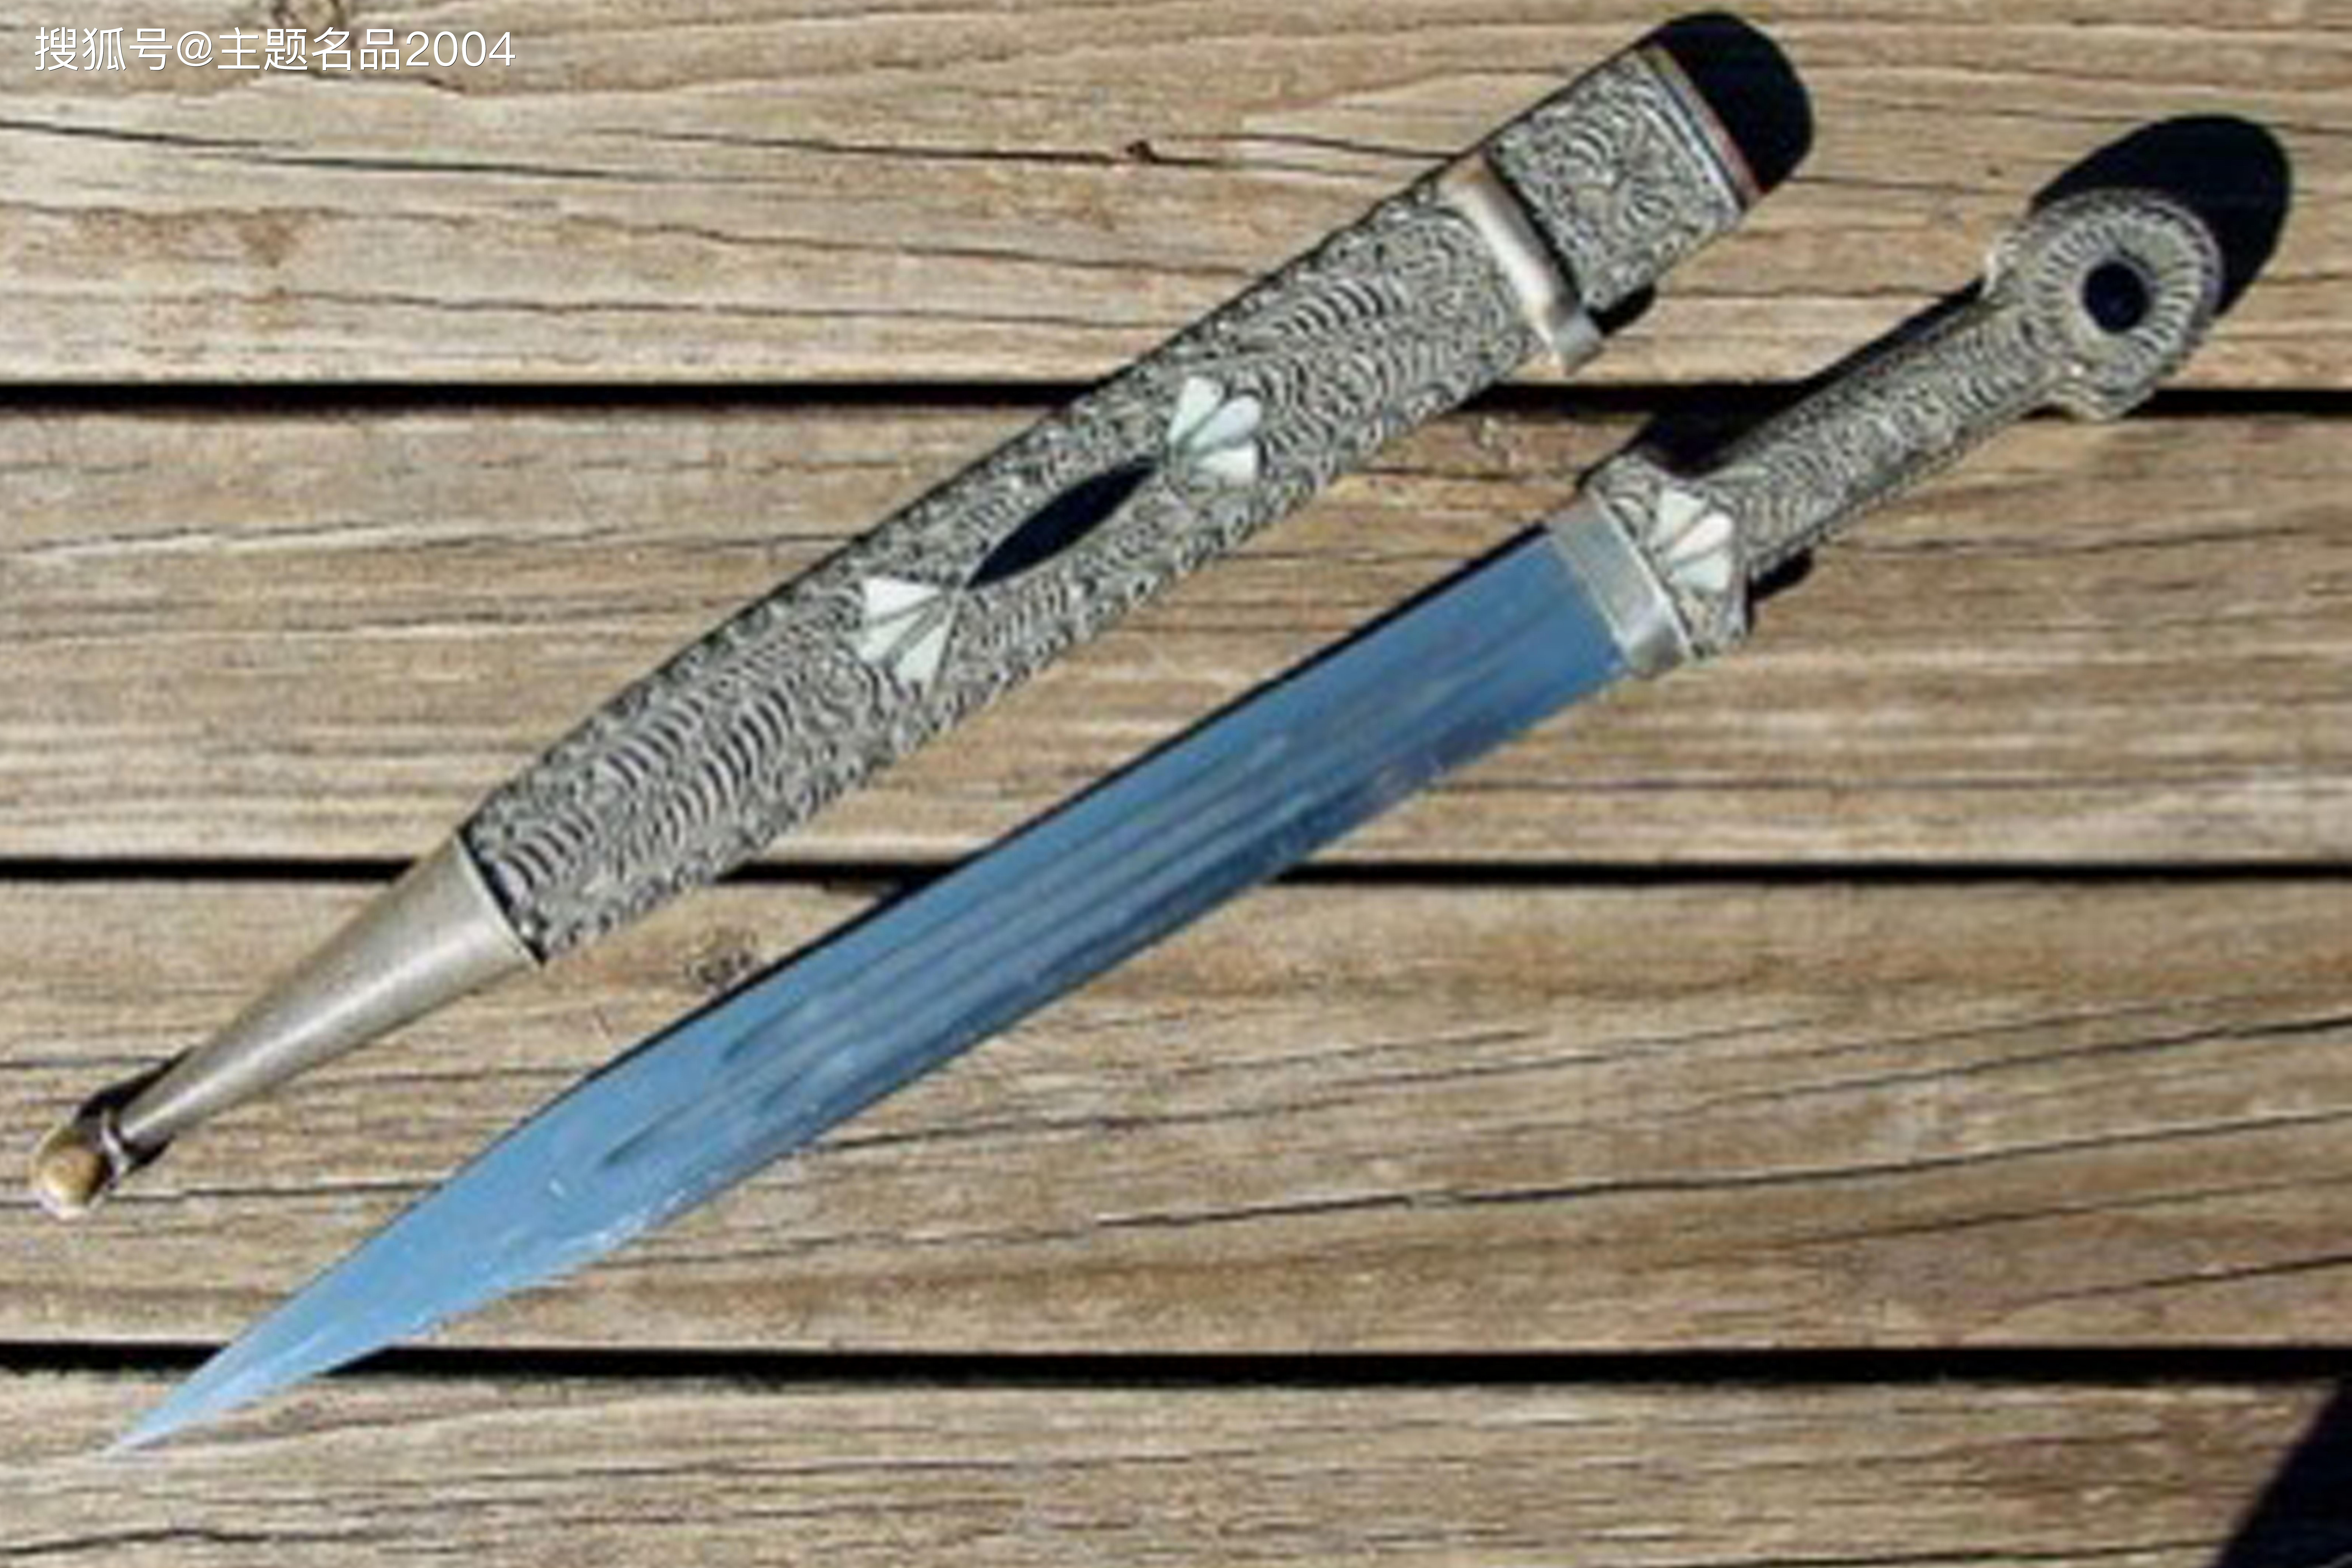 一支短剑,三种说法——不同象征意义的qama剑